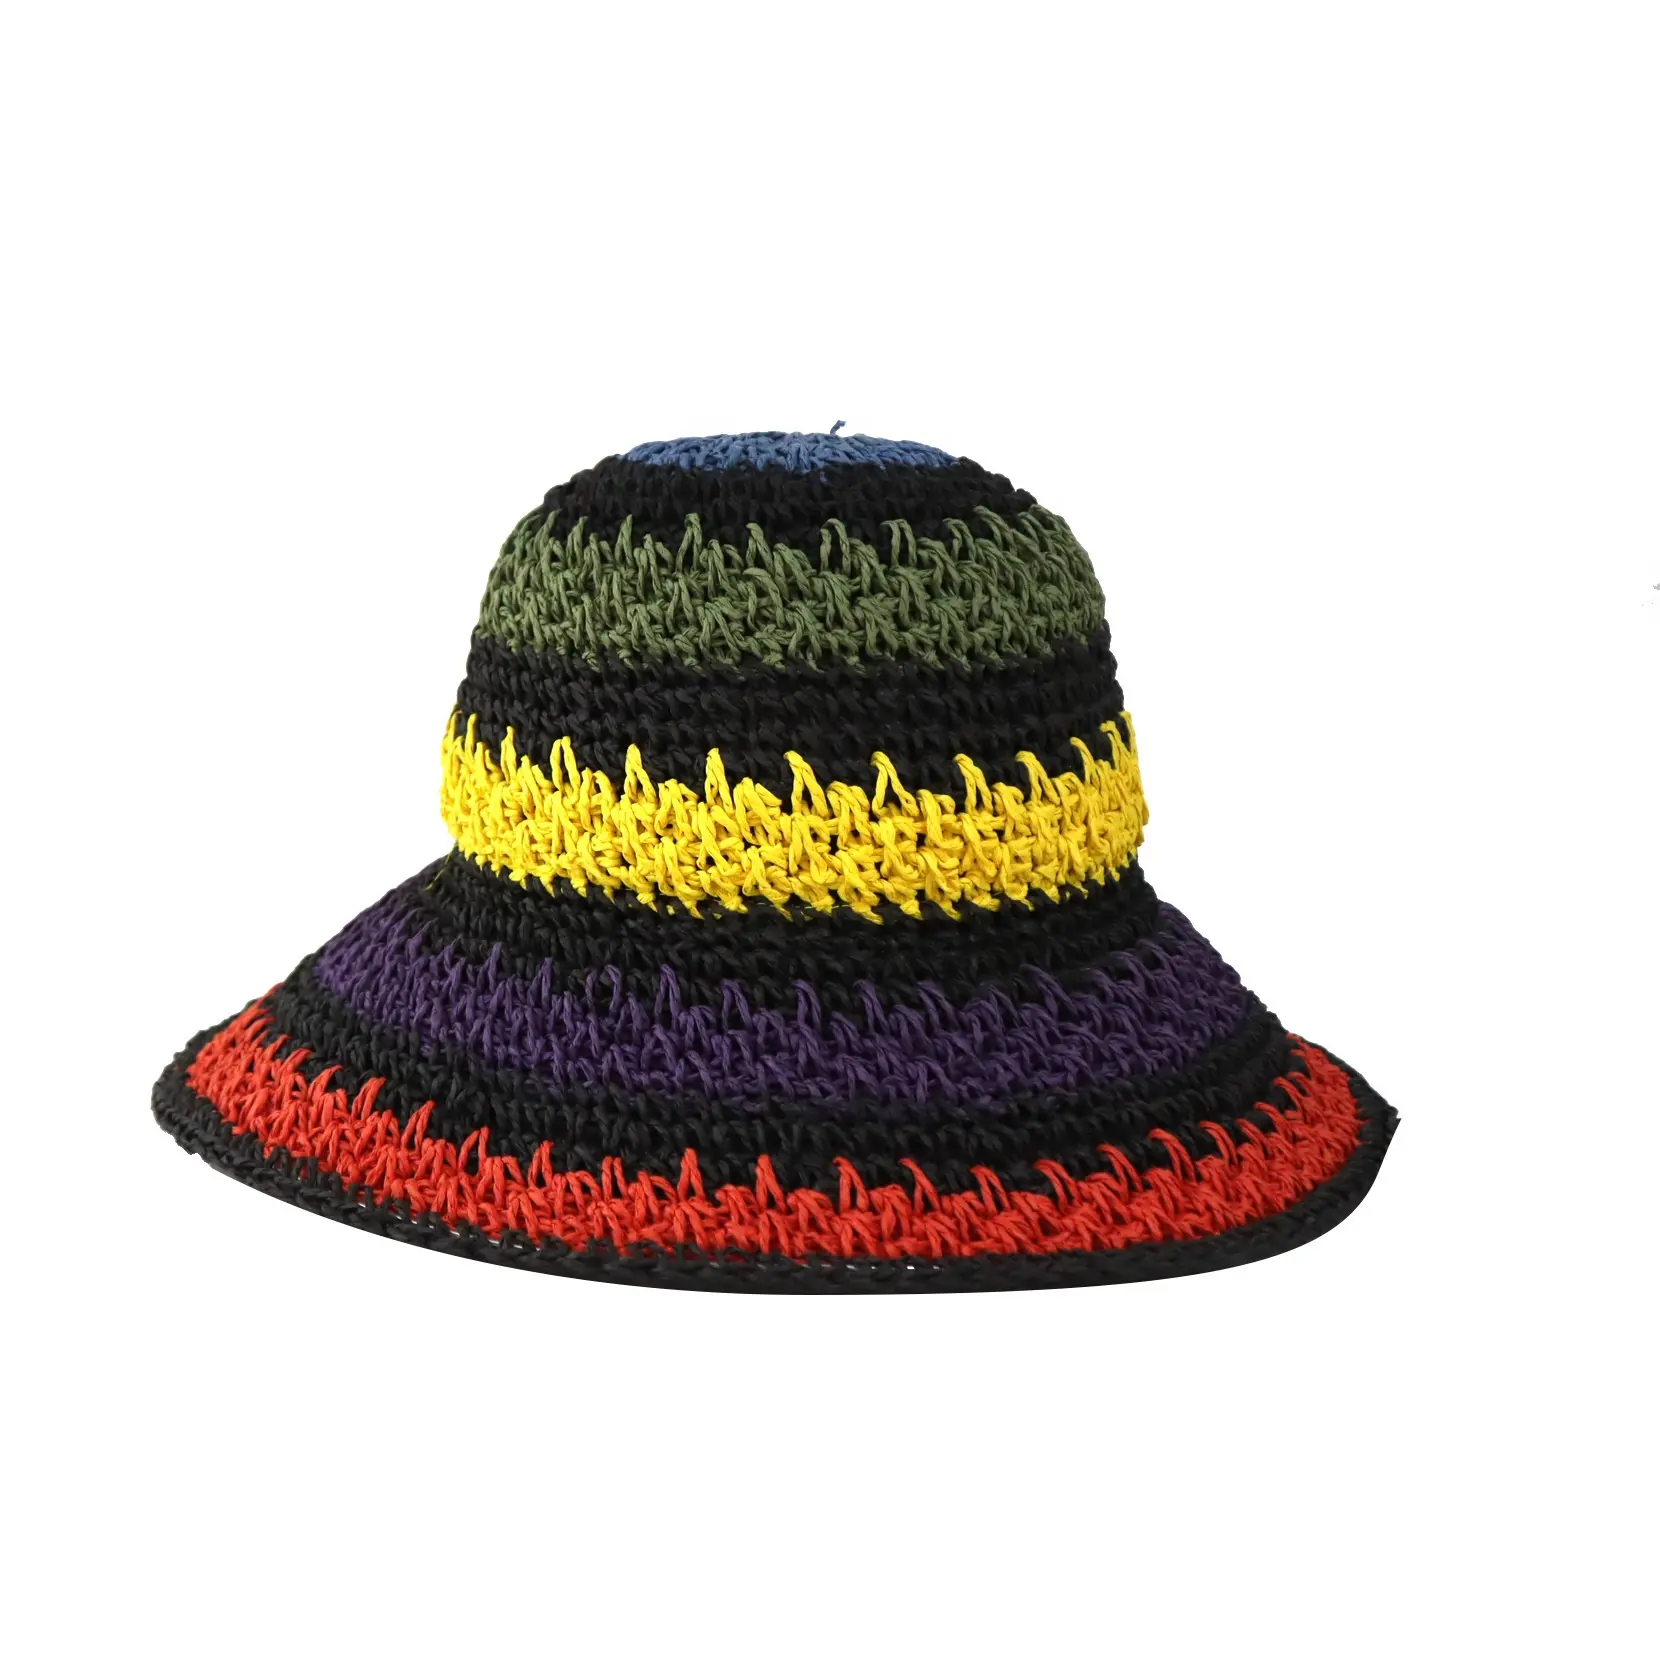 OEM ODM nouveaux modèles de collection plein air soleil pliable étiquette privée crochet sombreros customizados chapeaux de paille pour femmes pour l'été